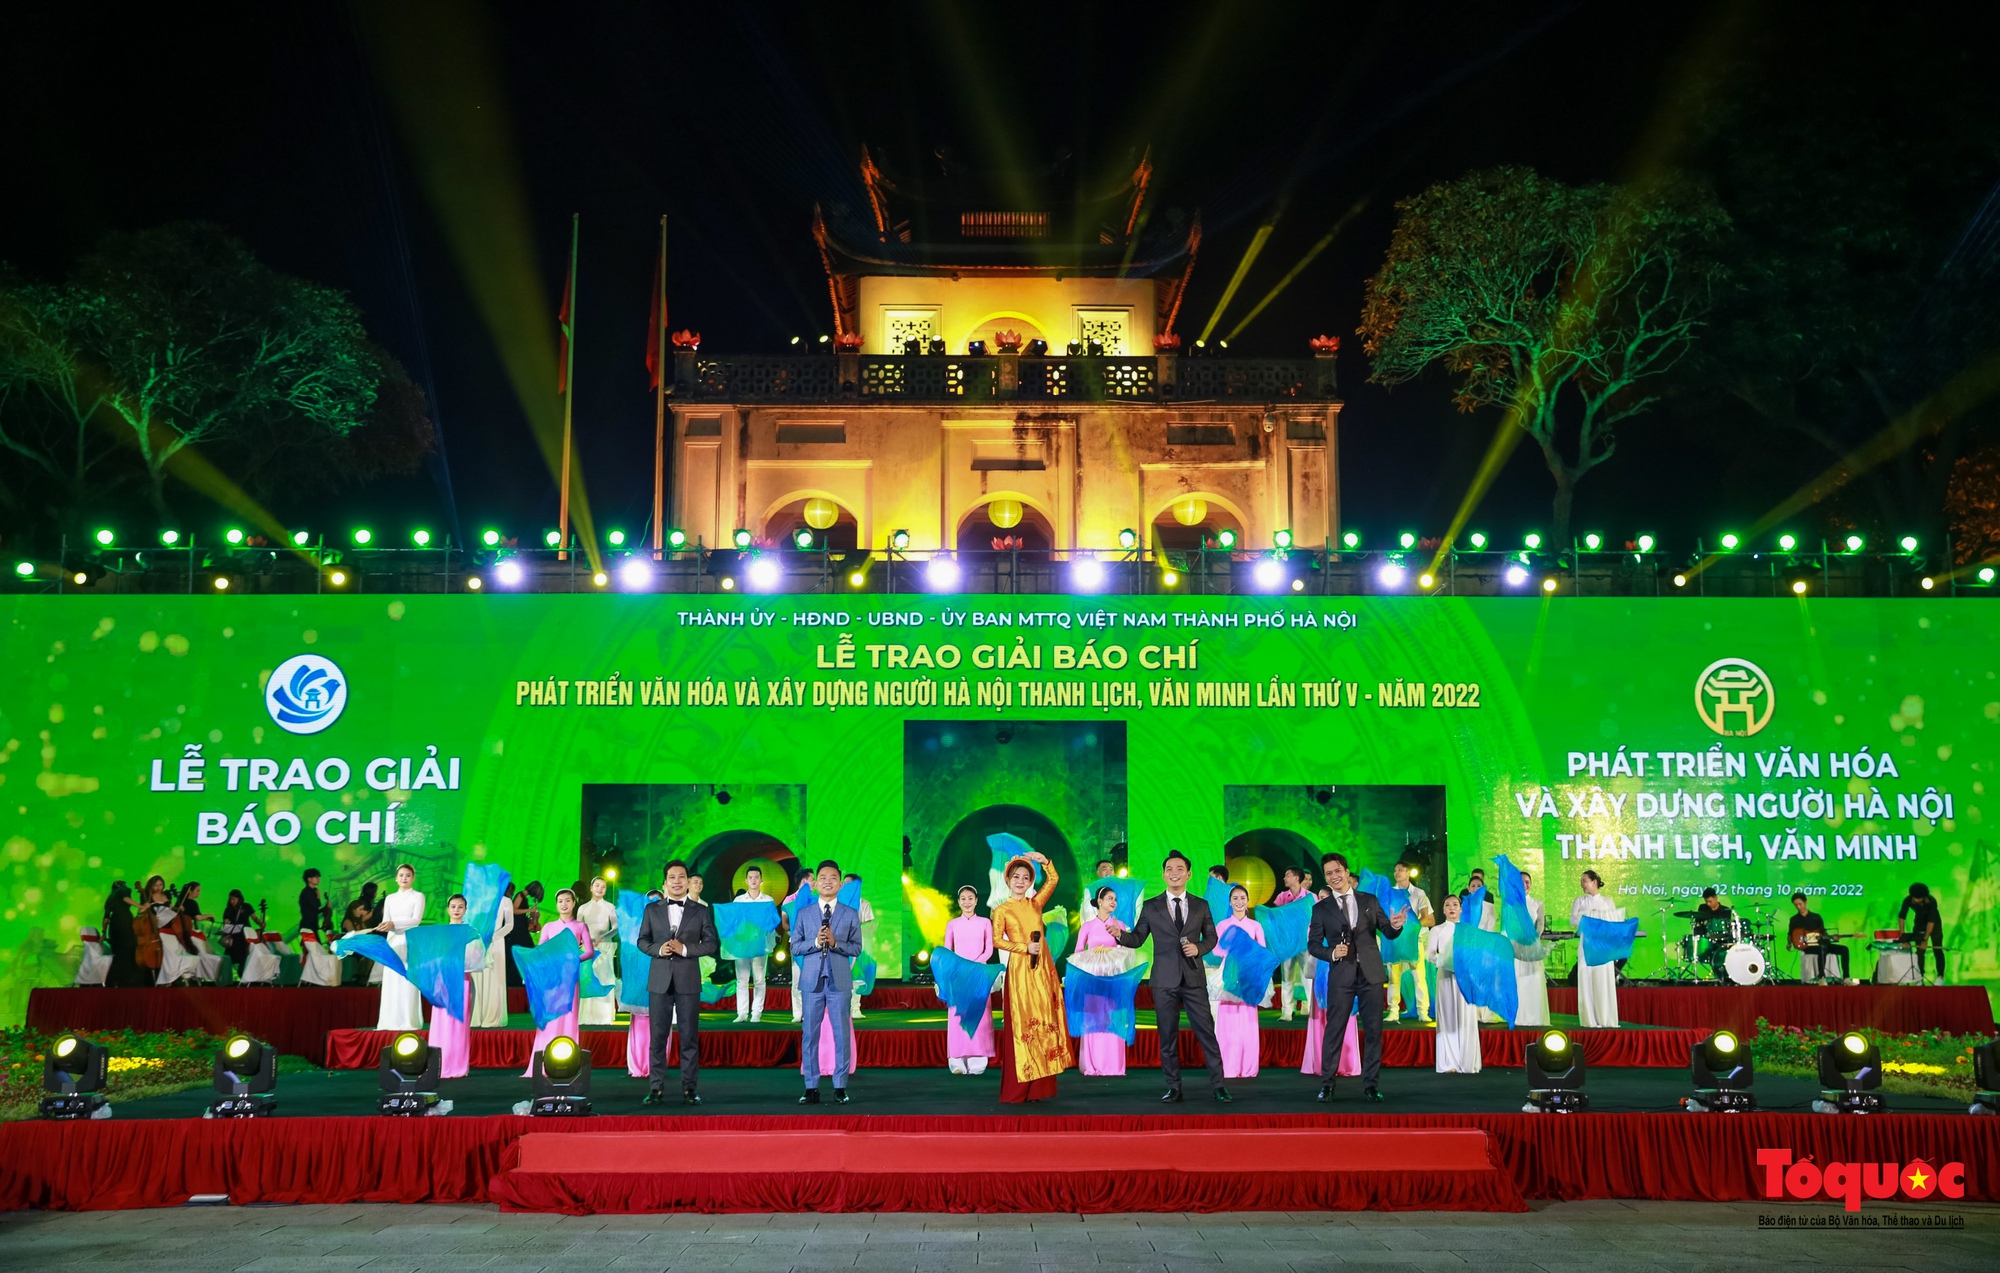 Chùm ảnh: Lễ trao Giải báo chí về phát triển văn hóa và xây dựng người Hà Nội thanh lịch, văn minh lần thứ V - năm 2022 - Ảnh 1.